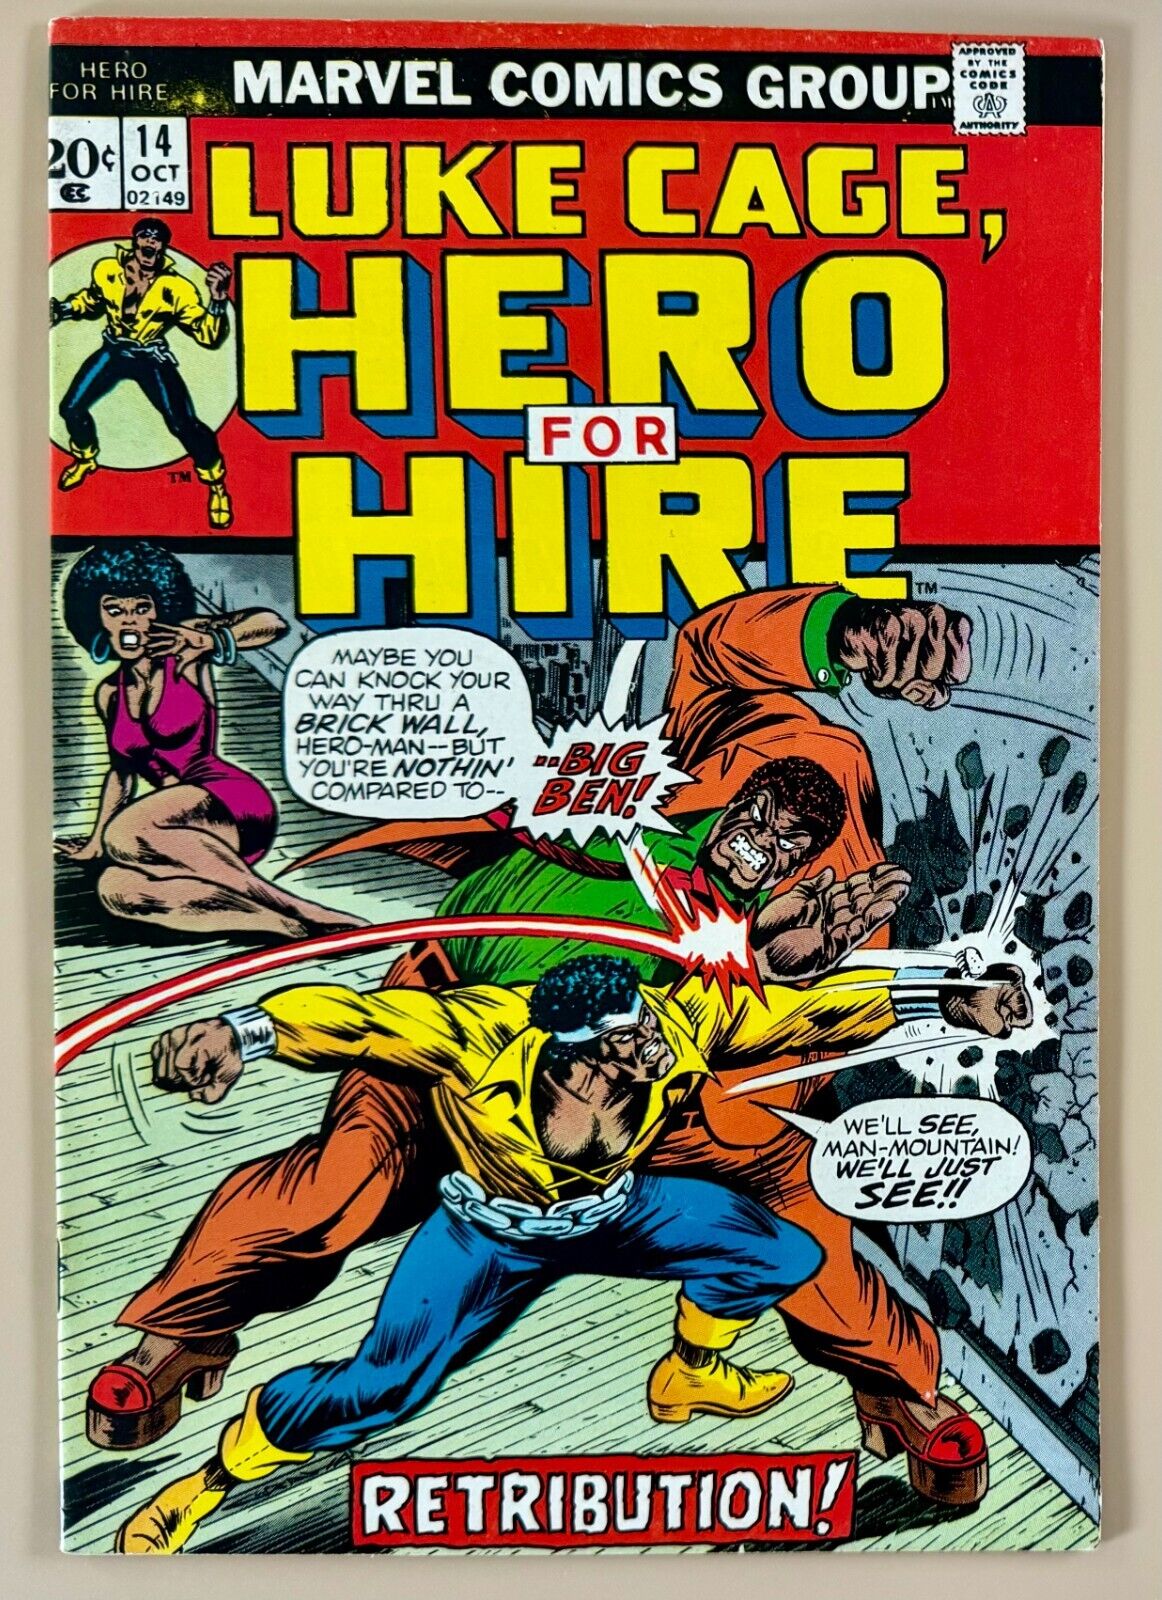 1973 Luke Cage, Hero For Hire #14 Origin of Luke Cage Power Man retold VG/FN